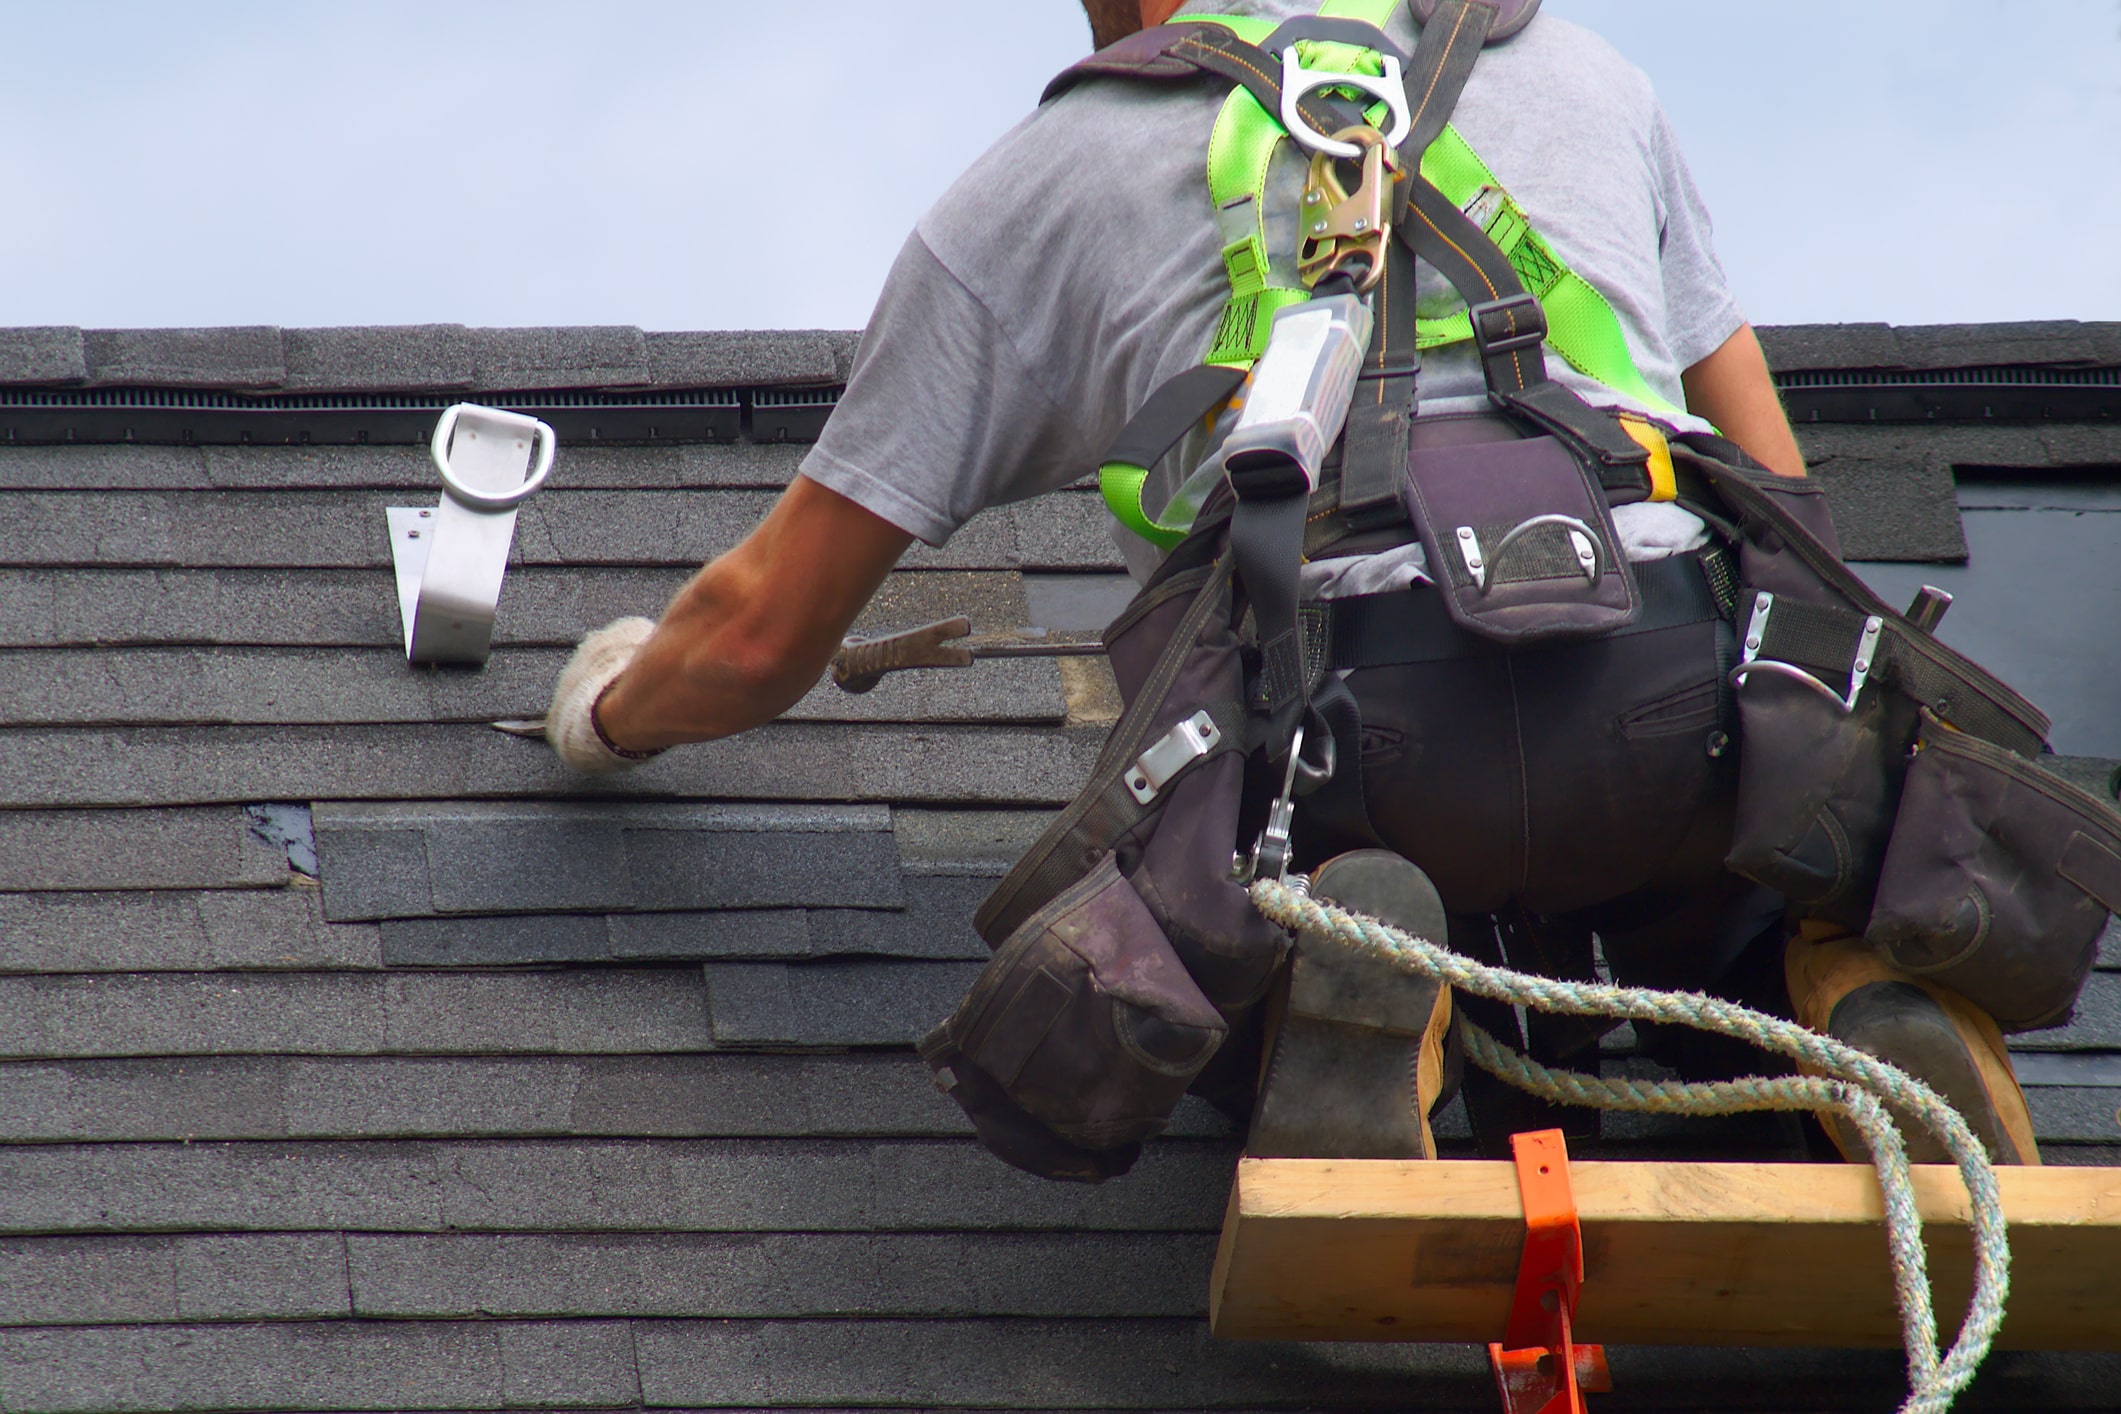 Dachdecker arbeitet auf Dach, gesichert mit Kletterausrüstung